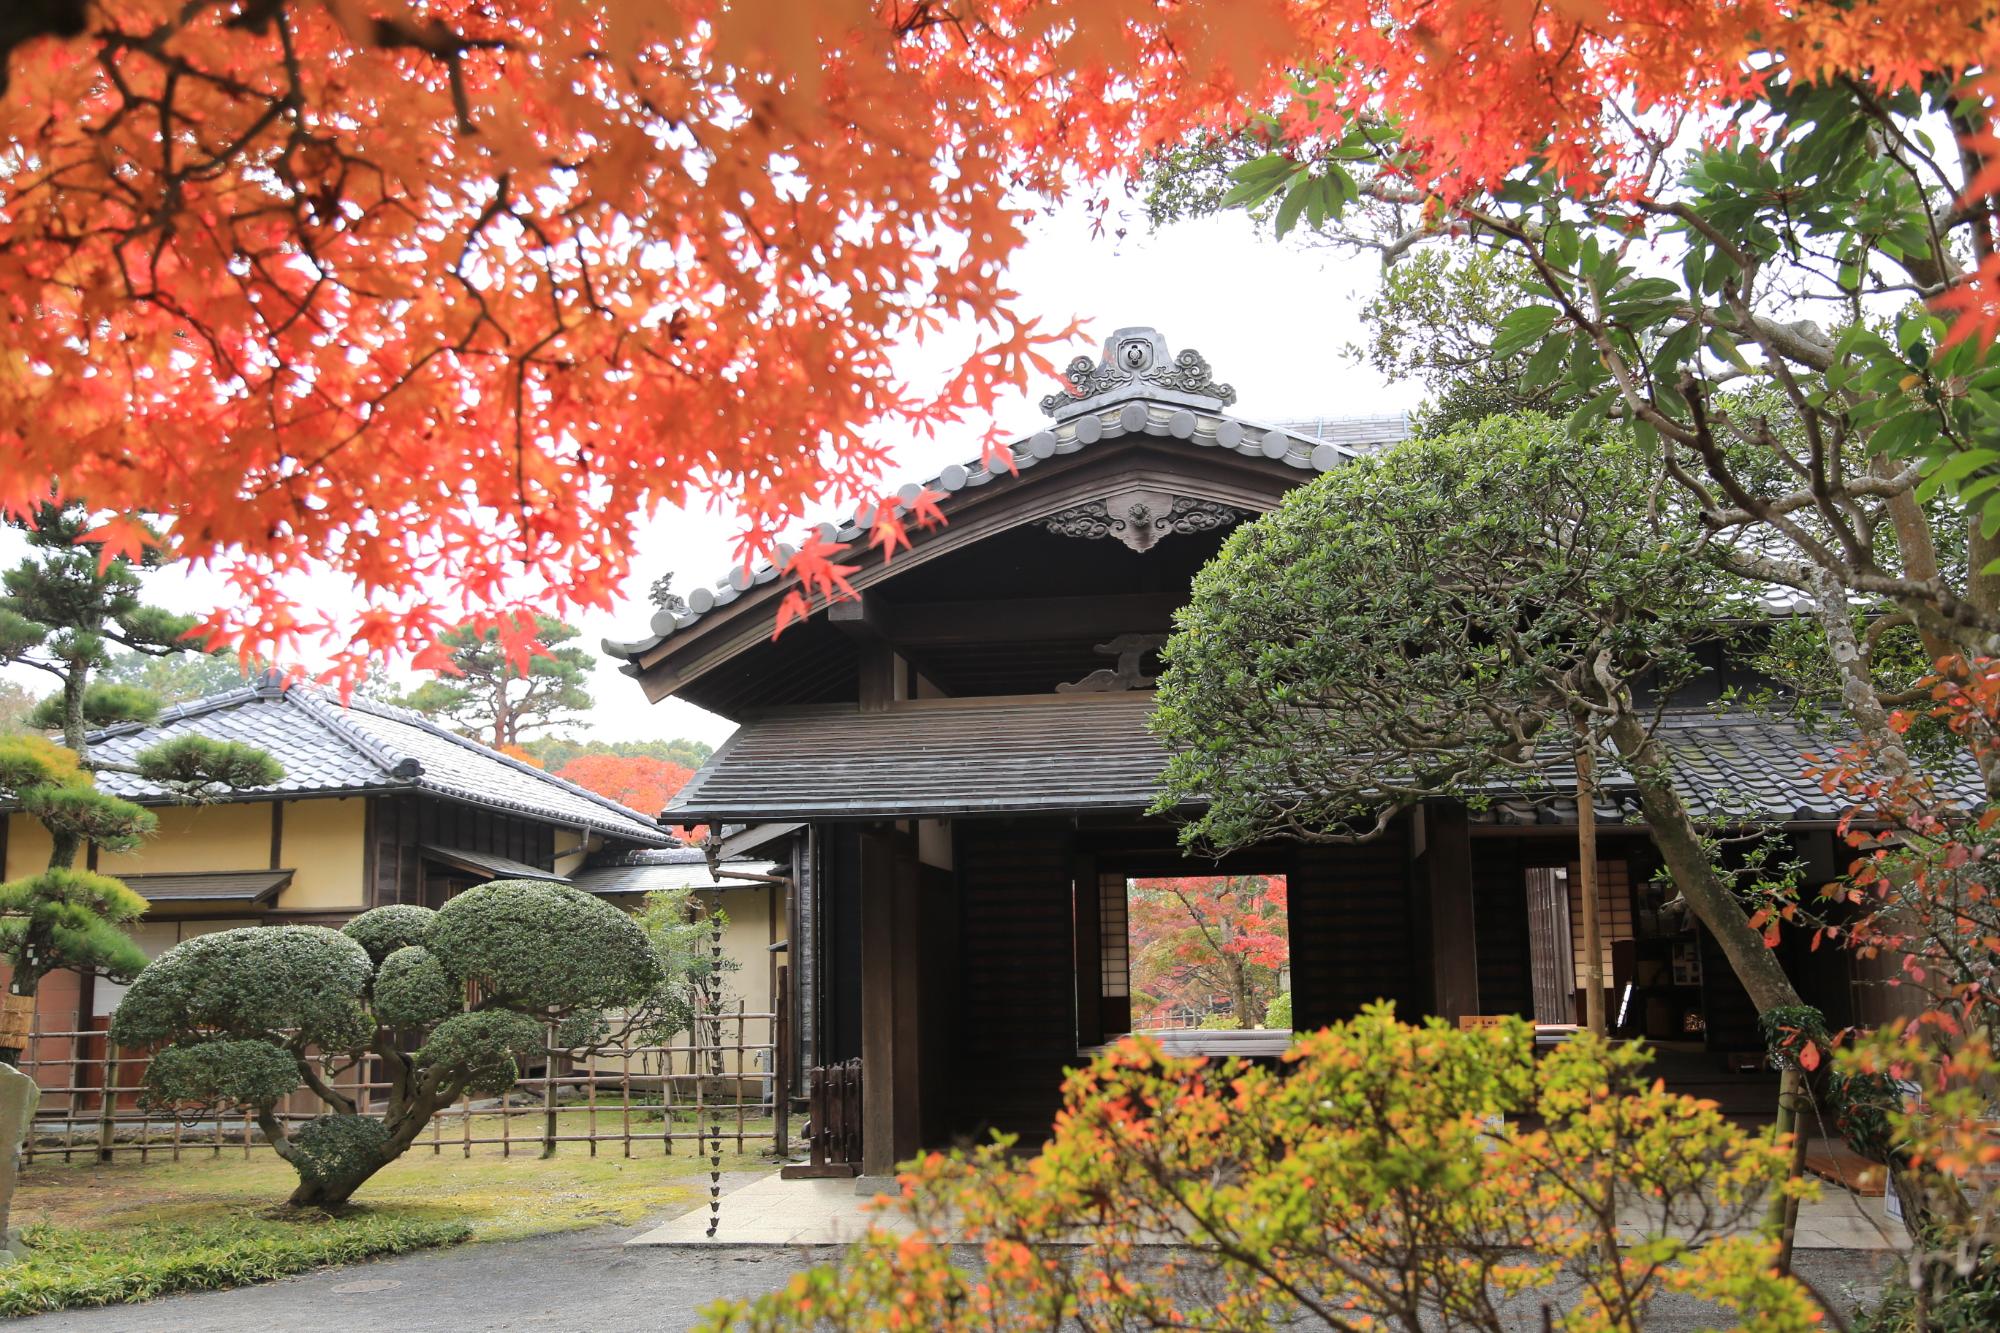 旧堀田邸の建物の前の木々が紅葉で赤く色づいている様子の写真